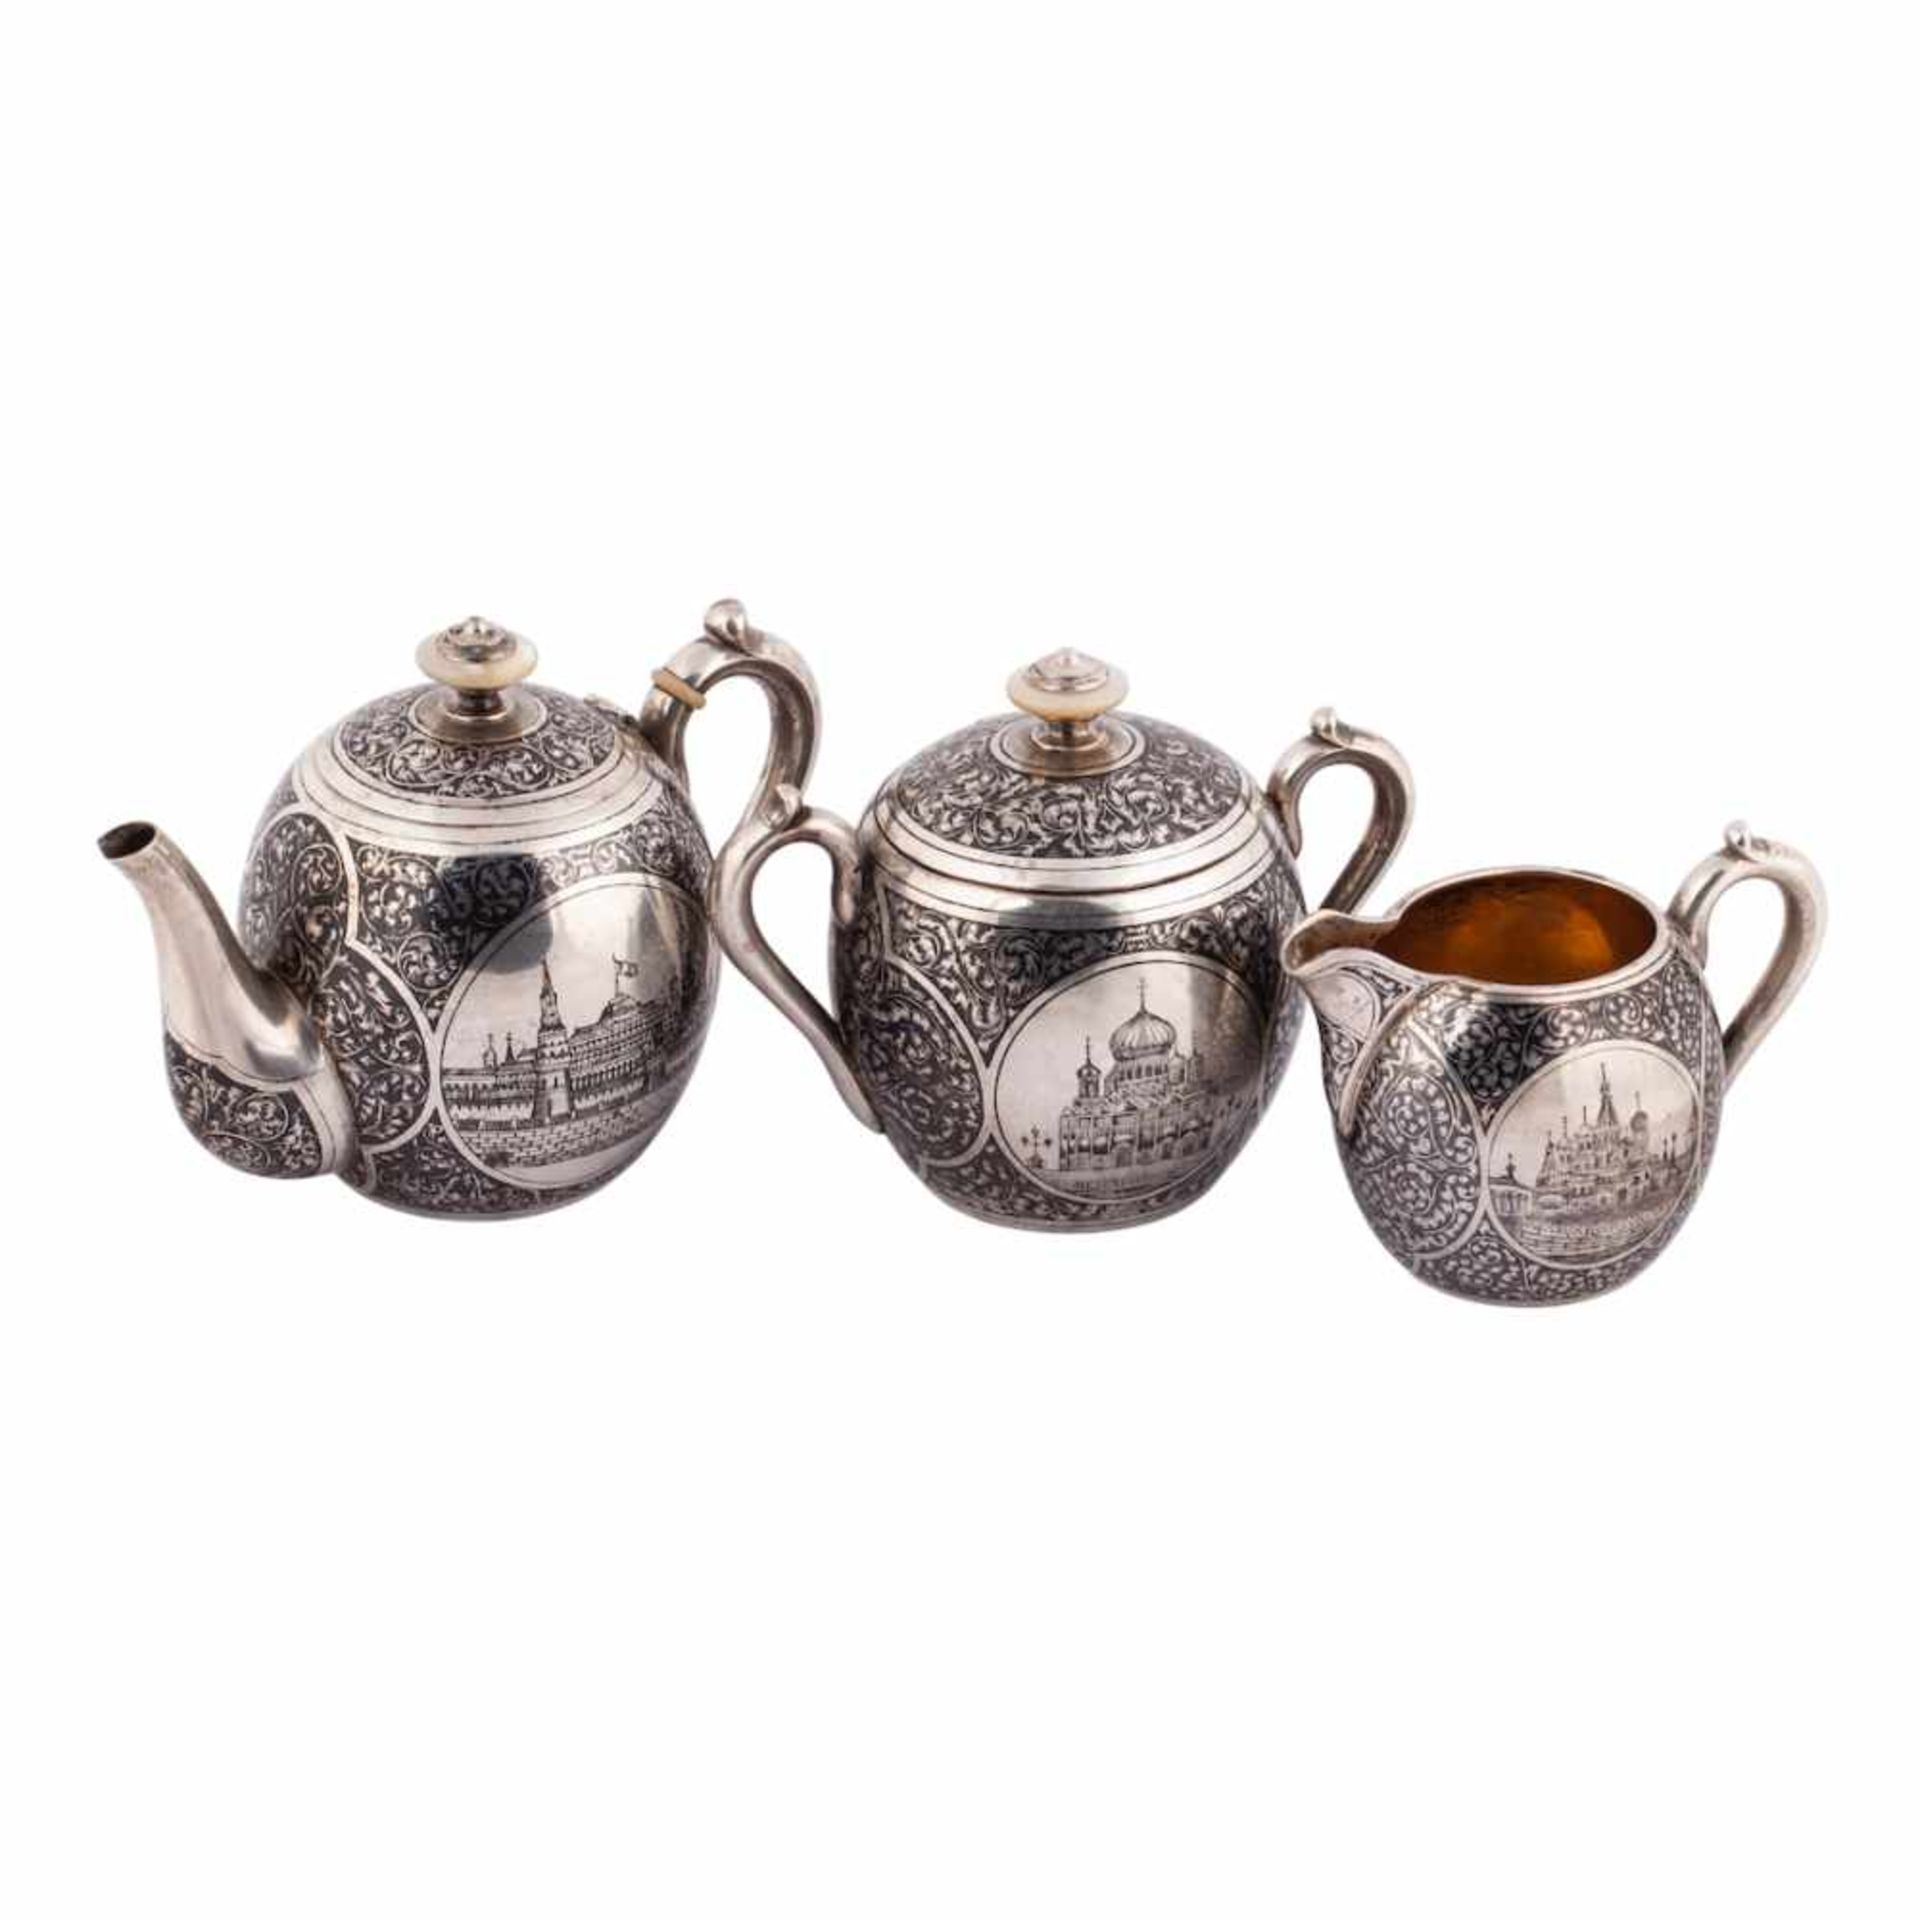 Russian silver and niello tea set